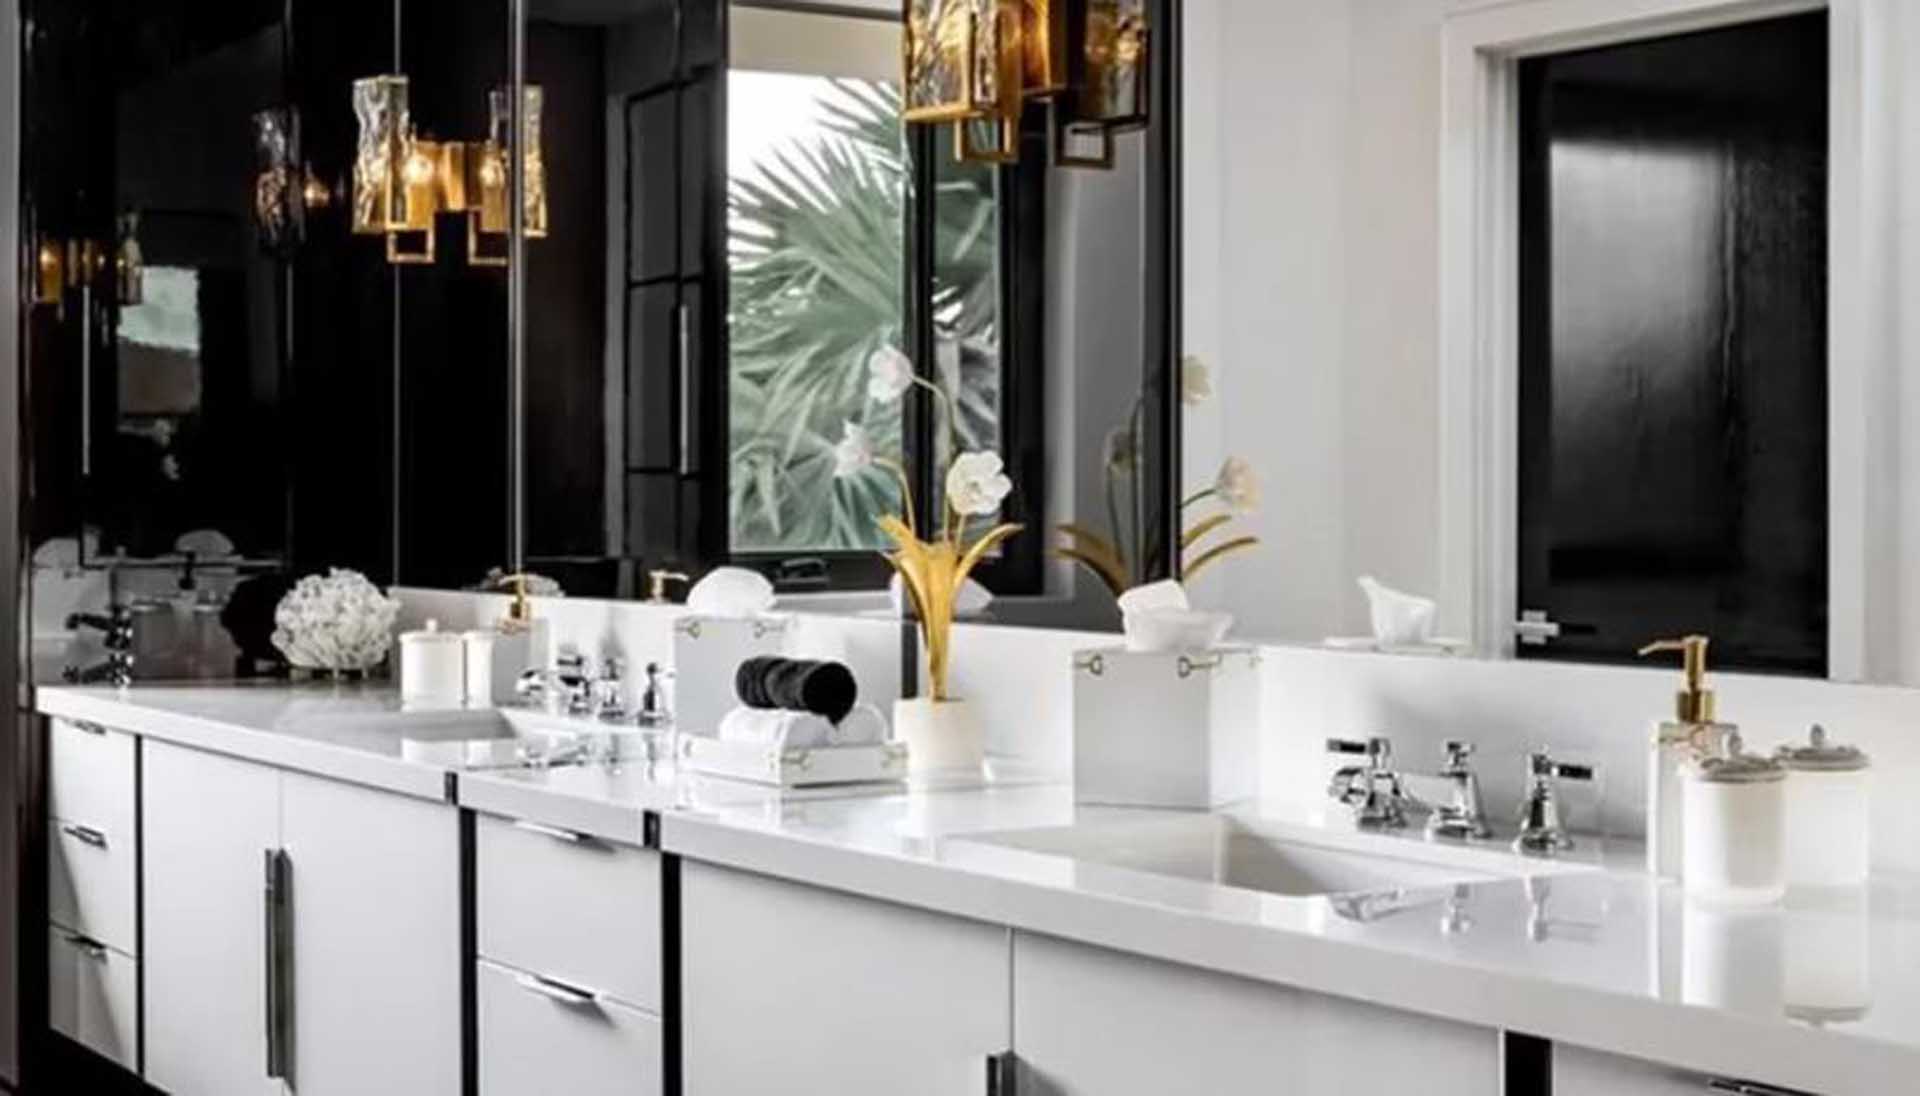 Los baños de la casa de Messi son especialmente modernos. En la imagen se puede ver uno color blanco y negro con tintes dorados